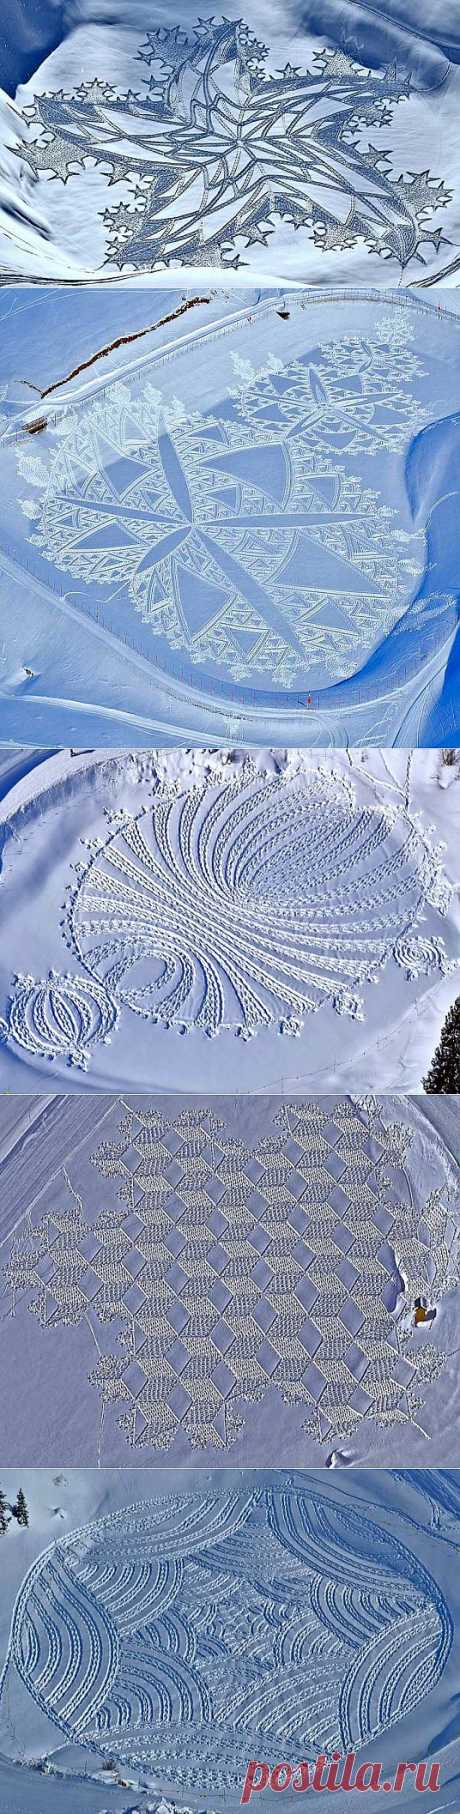 Рисунки на снегу художника Саймона Бека » Nibler.ru - мой маленький уютный уголок